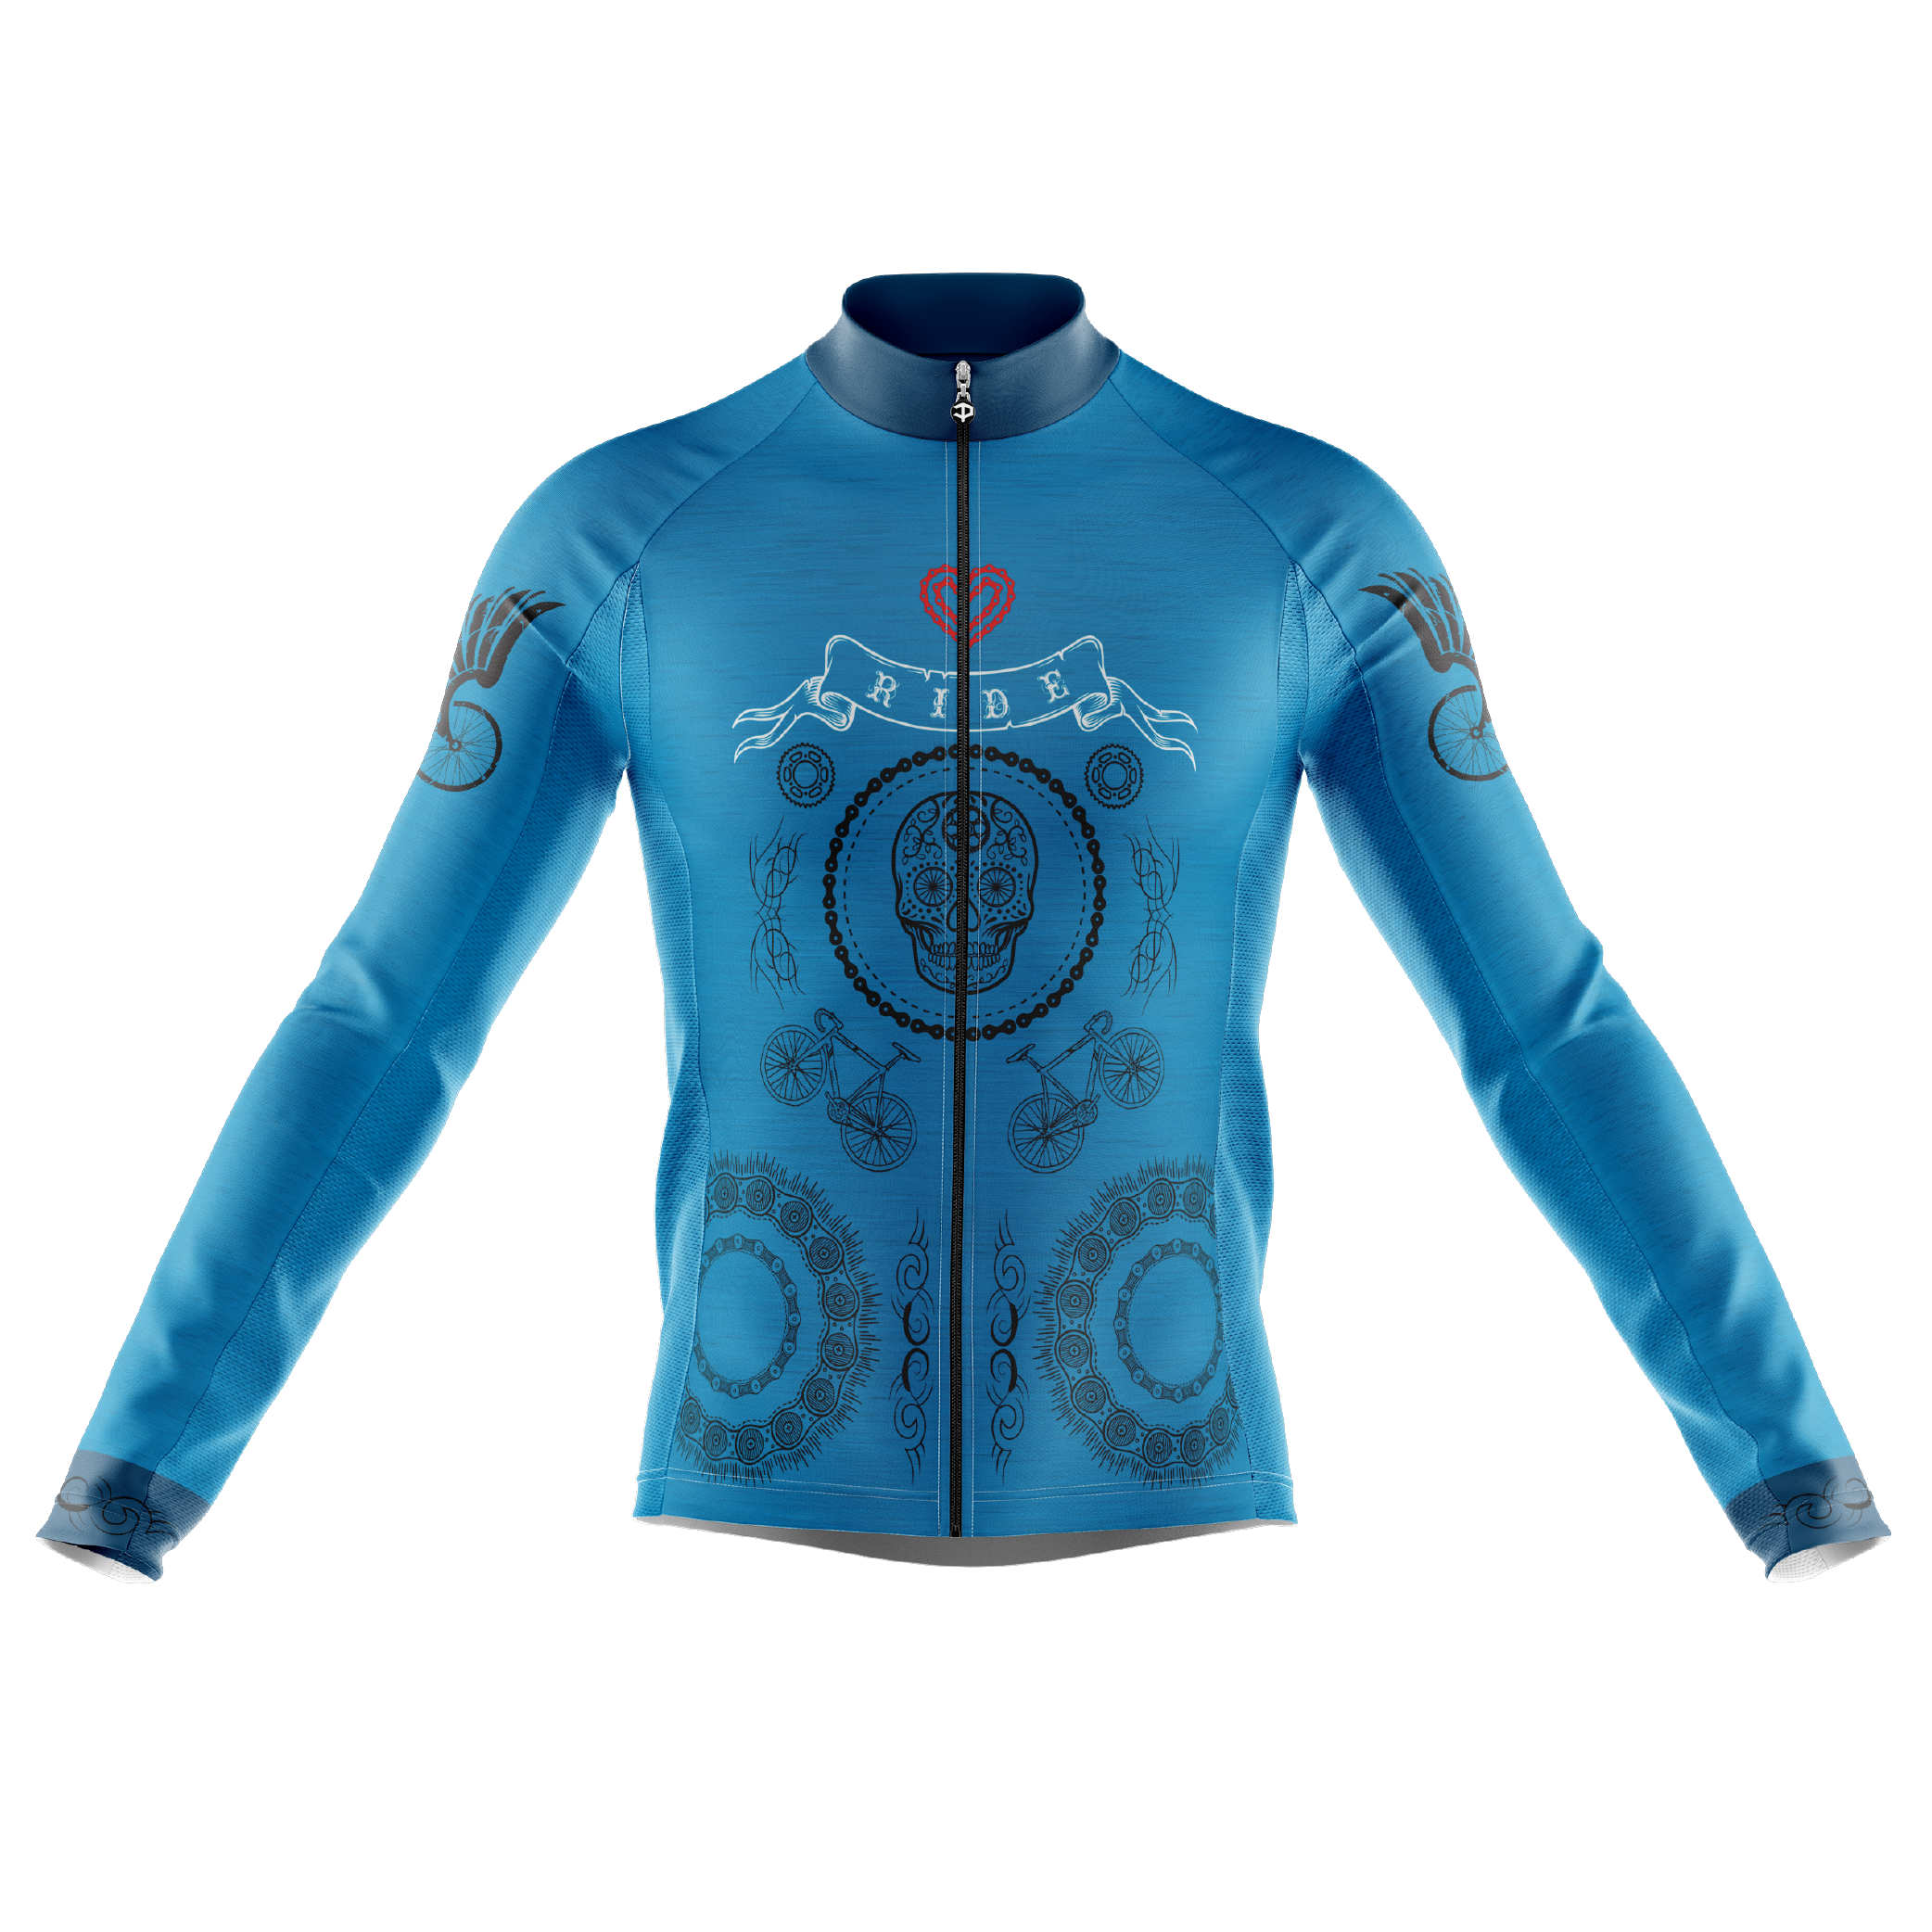 Skull & Gears Blue Long Sleeve Cycling Jersey